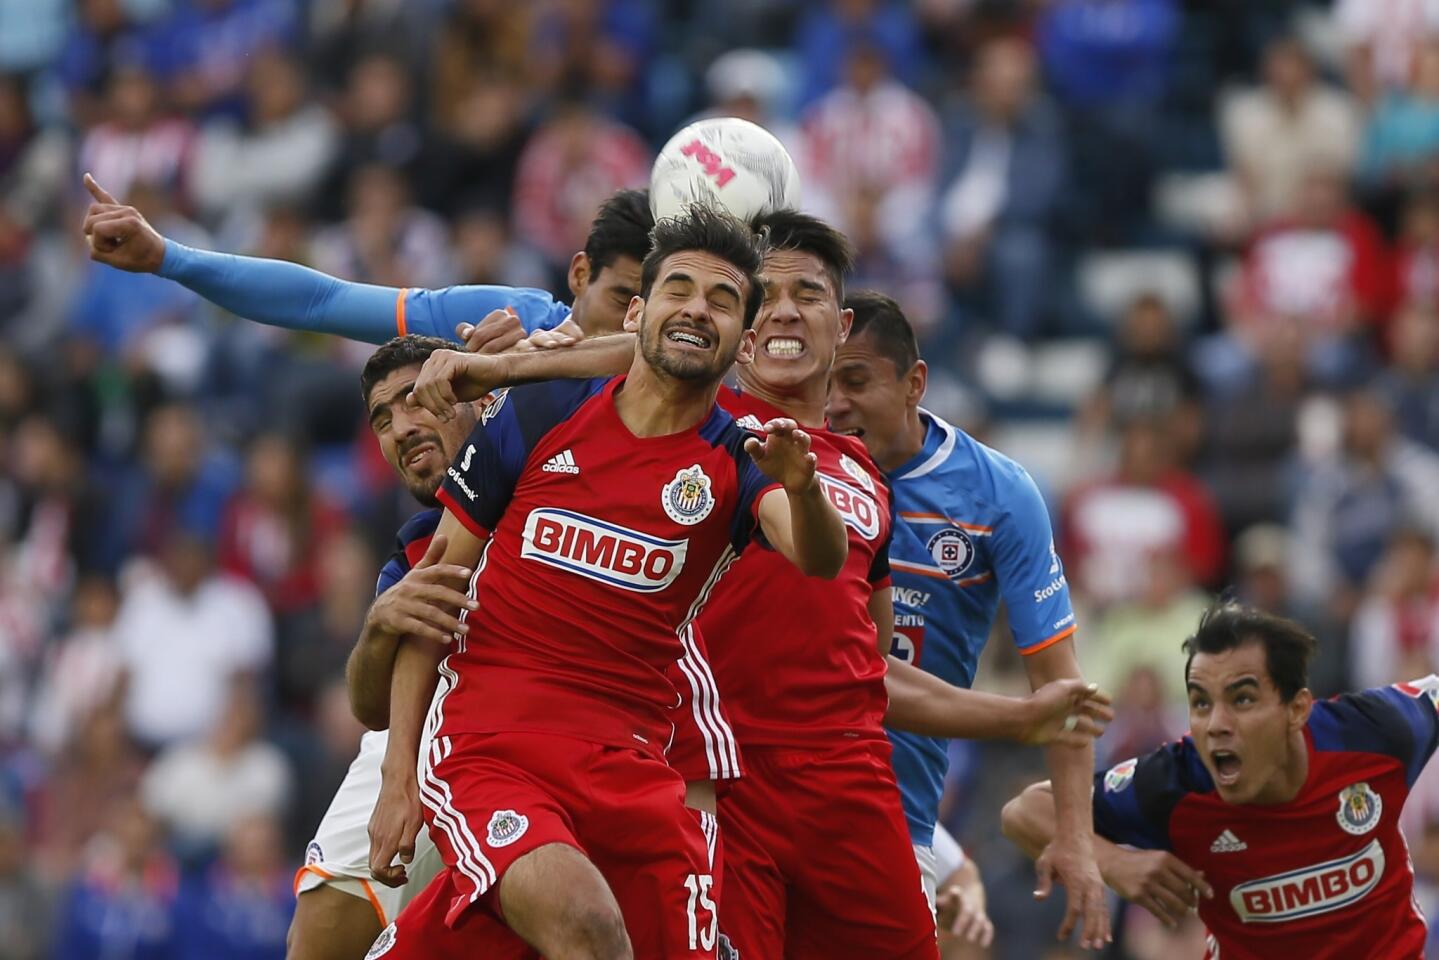 Los jugadores de Chivas Raúl López (frente) y Carlos Salcedo (d) disputan el balón con Jorge Benítez (atrás izq.) y con Aldo Ramírez (atrás der.) de Cruz Azul, en partido de la jornada 2 del Torneo Clausura del futbol mexicano, realizado en el estadio Azul, en Ciudad de México.